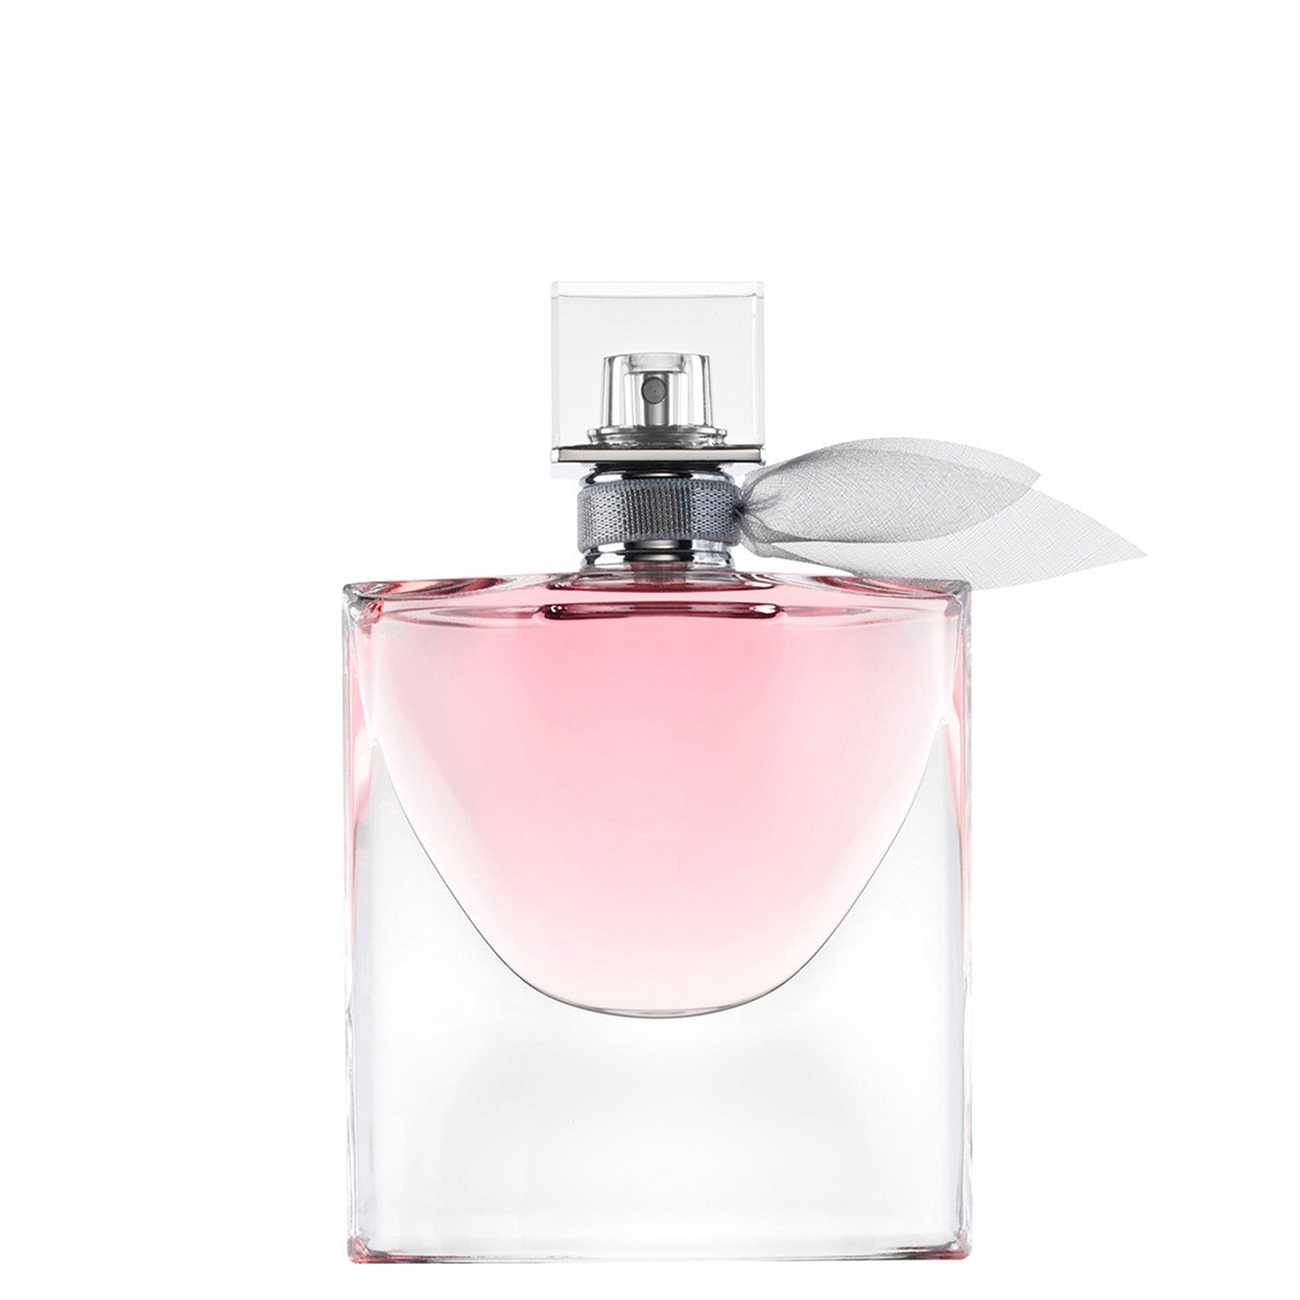 Apa de Parfum Lancôme LA VIE EST BELLE 75ml cu comanda online